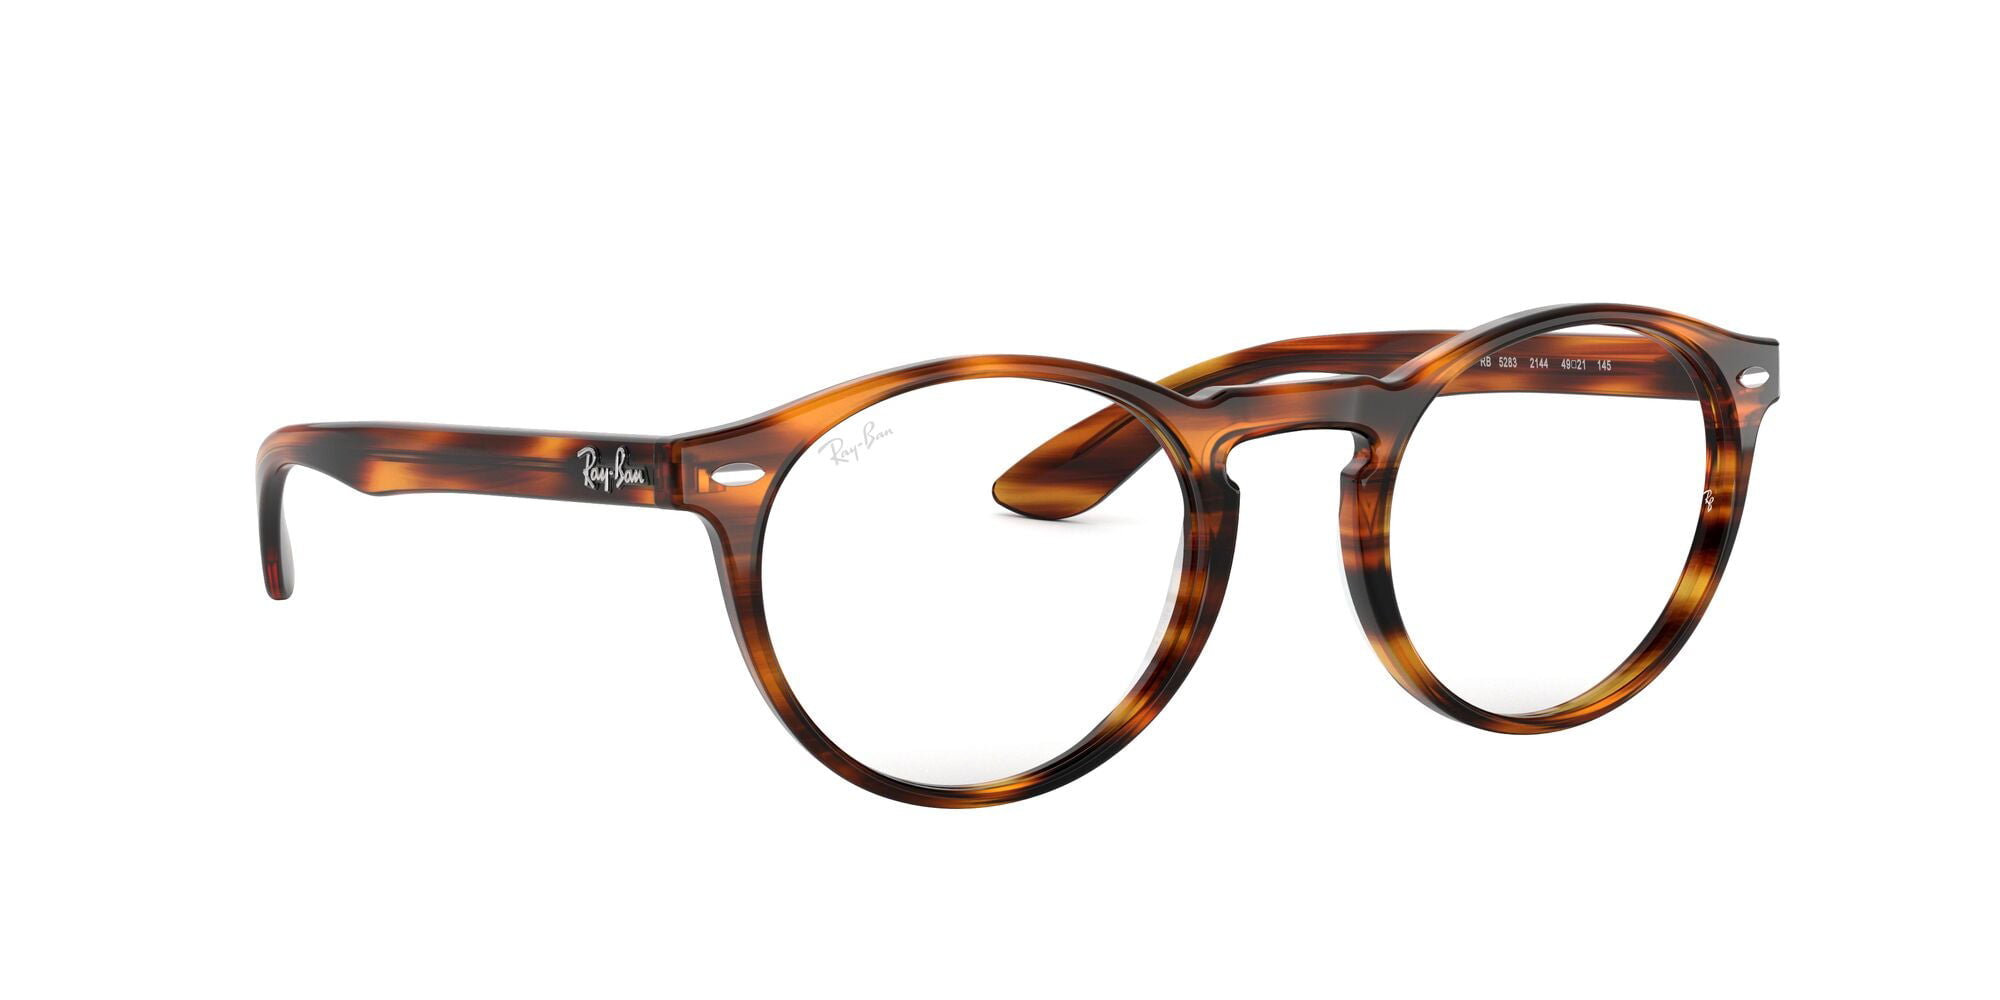 Tijdreeksen Kwalificatie waarom niet Ray-Ban eyeglasses RX5283 (2144) striped havana with demo lenses, 51mm -  Walmart.com